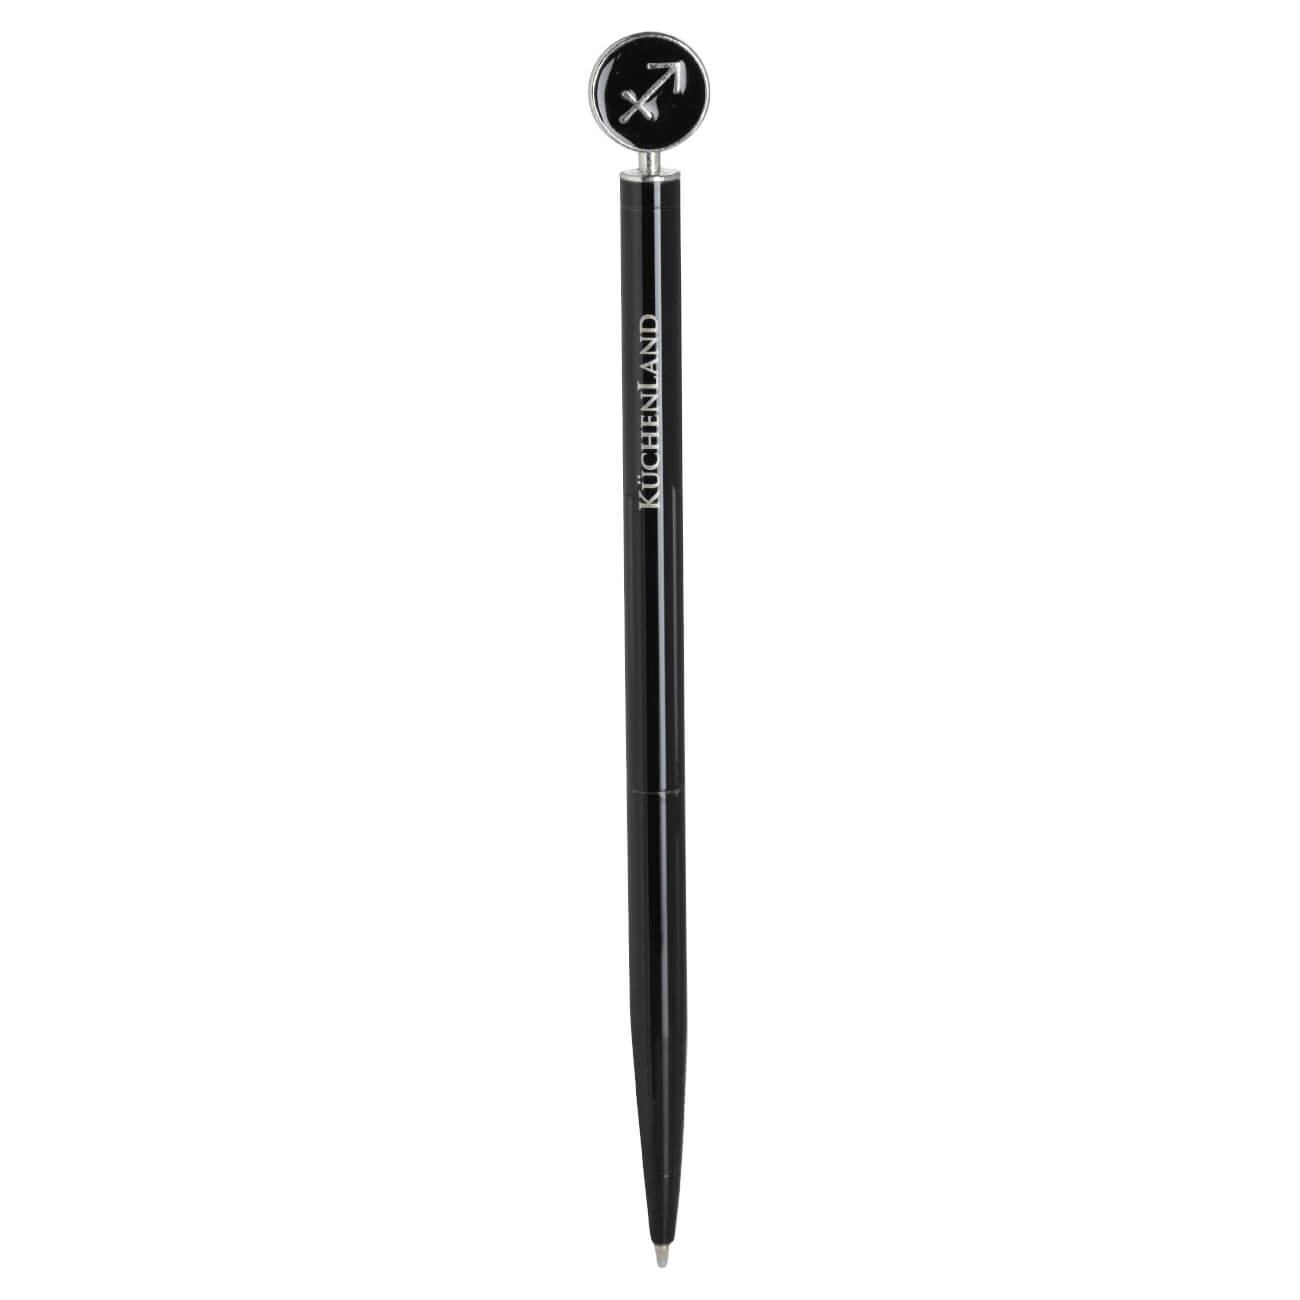 Ручка шариковая, 15 см, с фигуркой, сталь, черно-серебристая, Стрелец, Zodiac расческа грабли с конусообразными зубьями нескользящая ручка 8 х 15 5 см черно красная